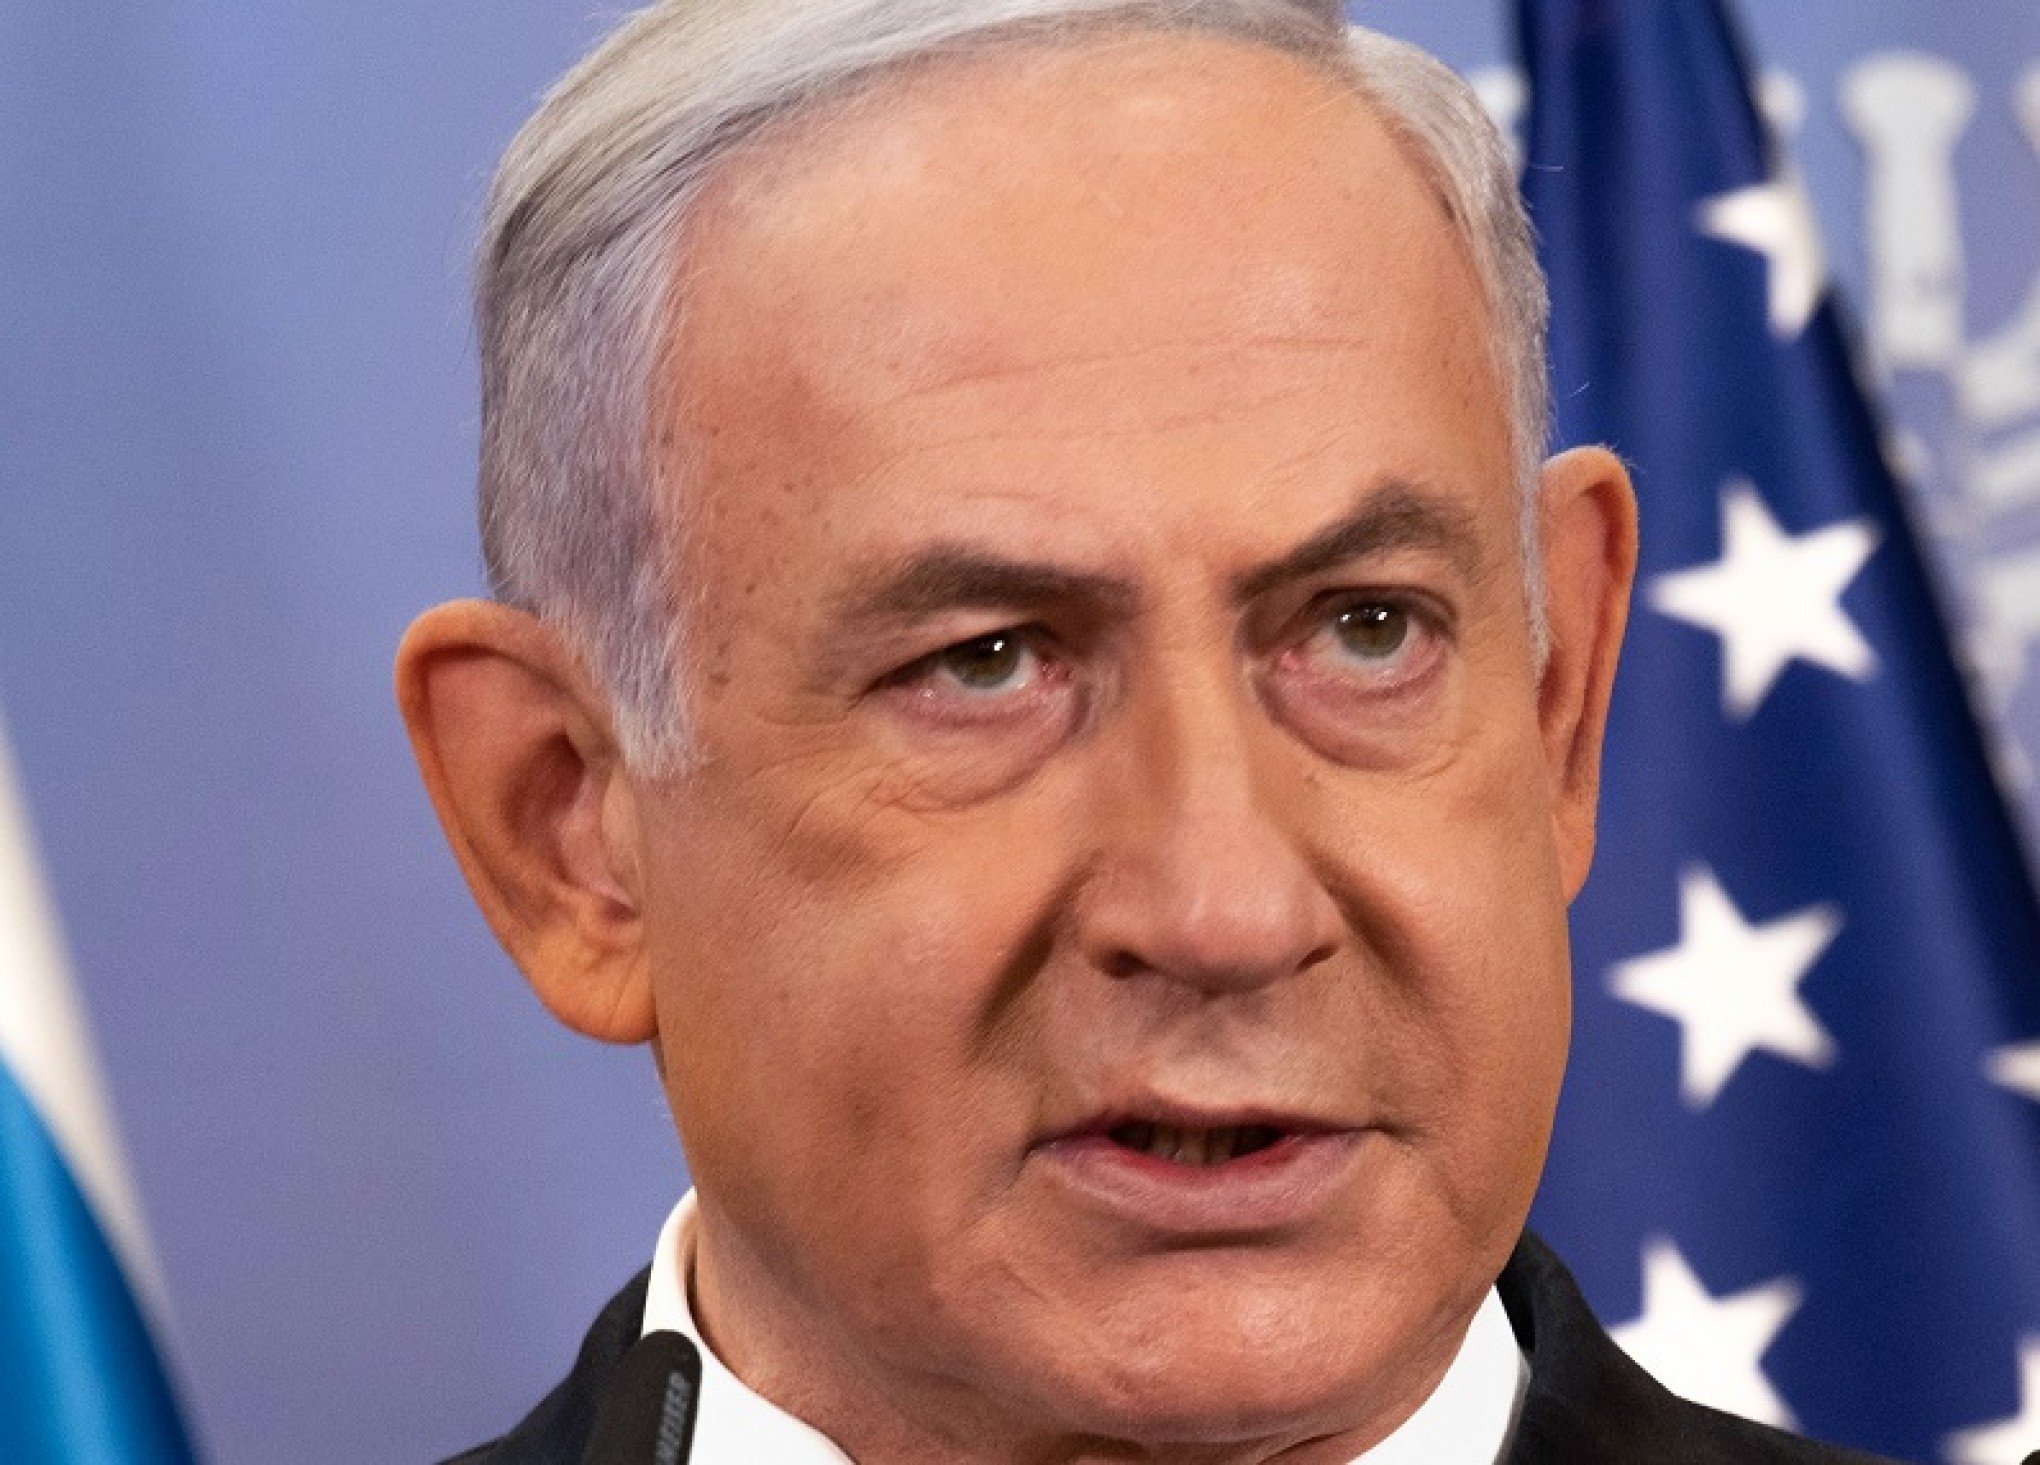 GUERRA ISRAEL-HAMAS: Netanyahu diz que ofensiva em Gaza está "apenas no começo'"